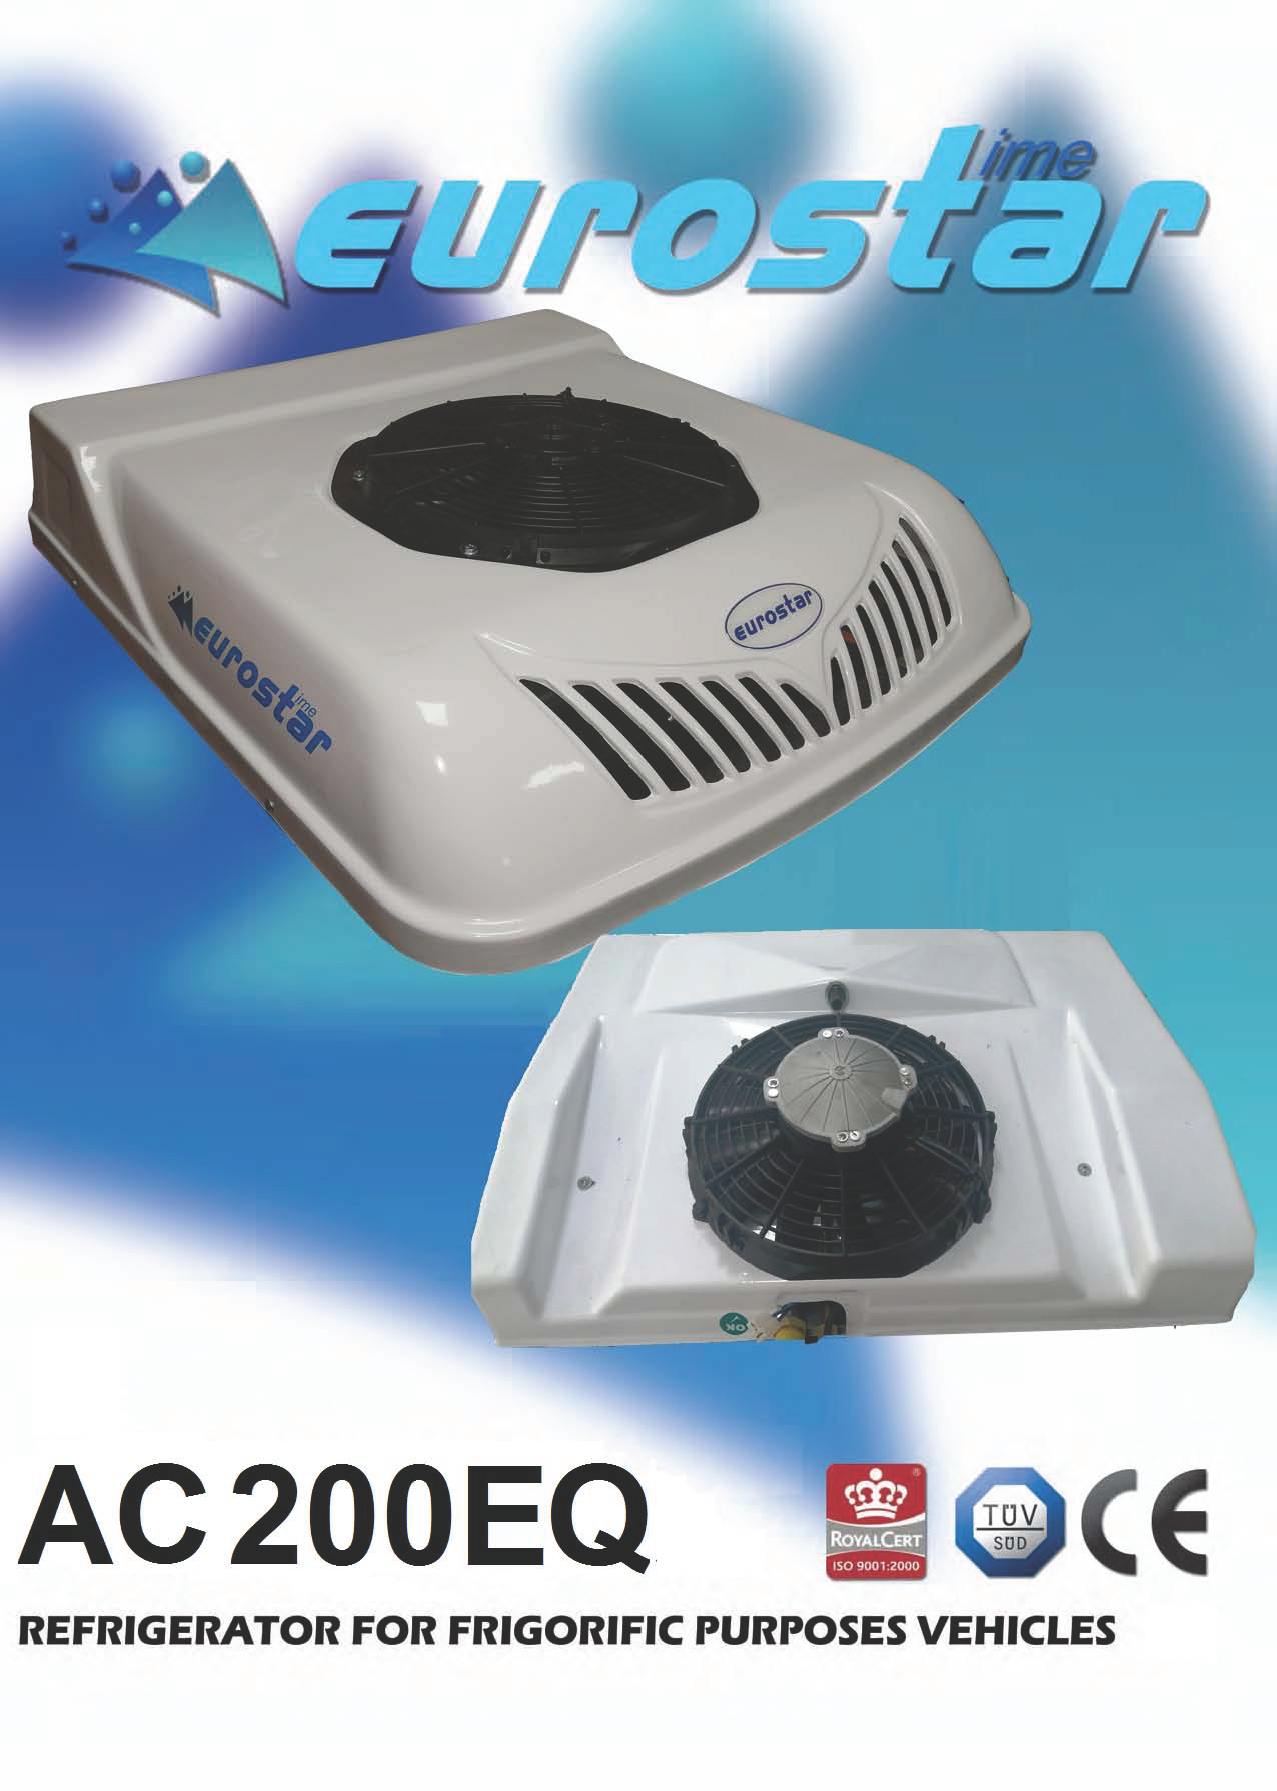 AC200EQ ELECTRICAL REFRIGERATOR